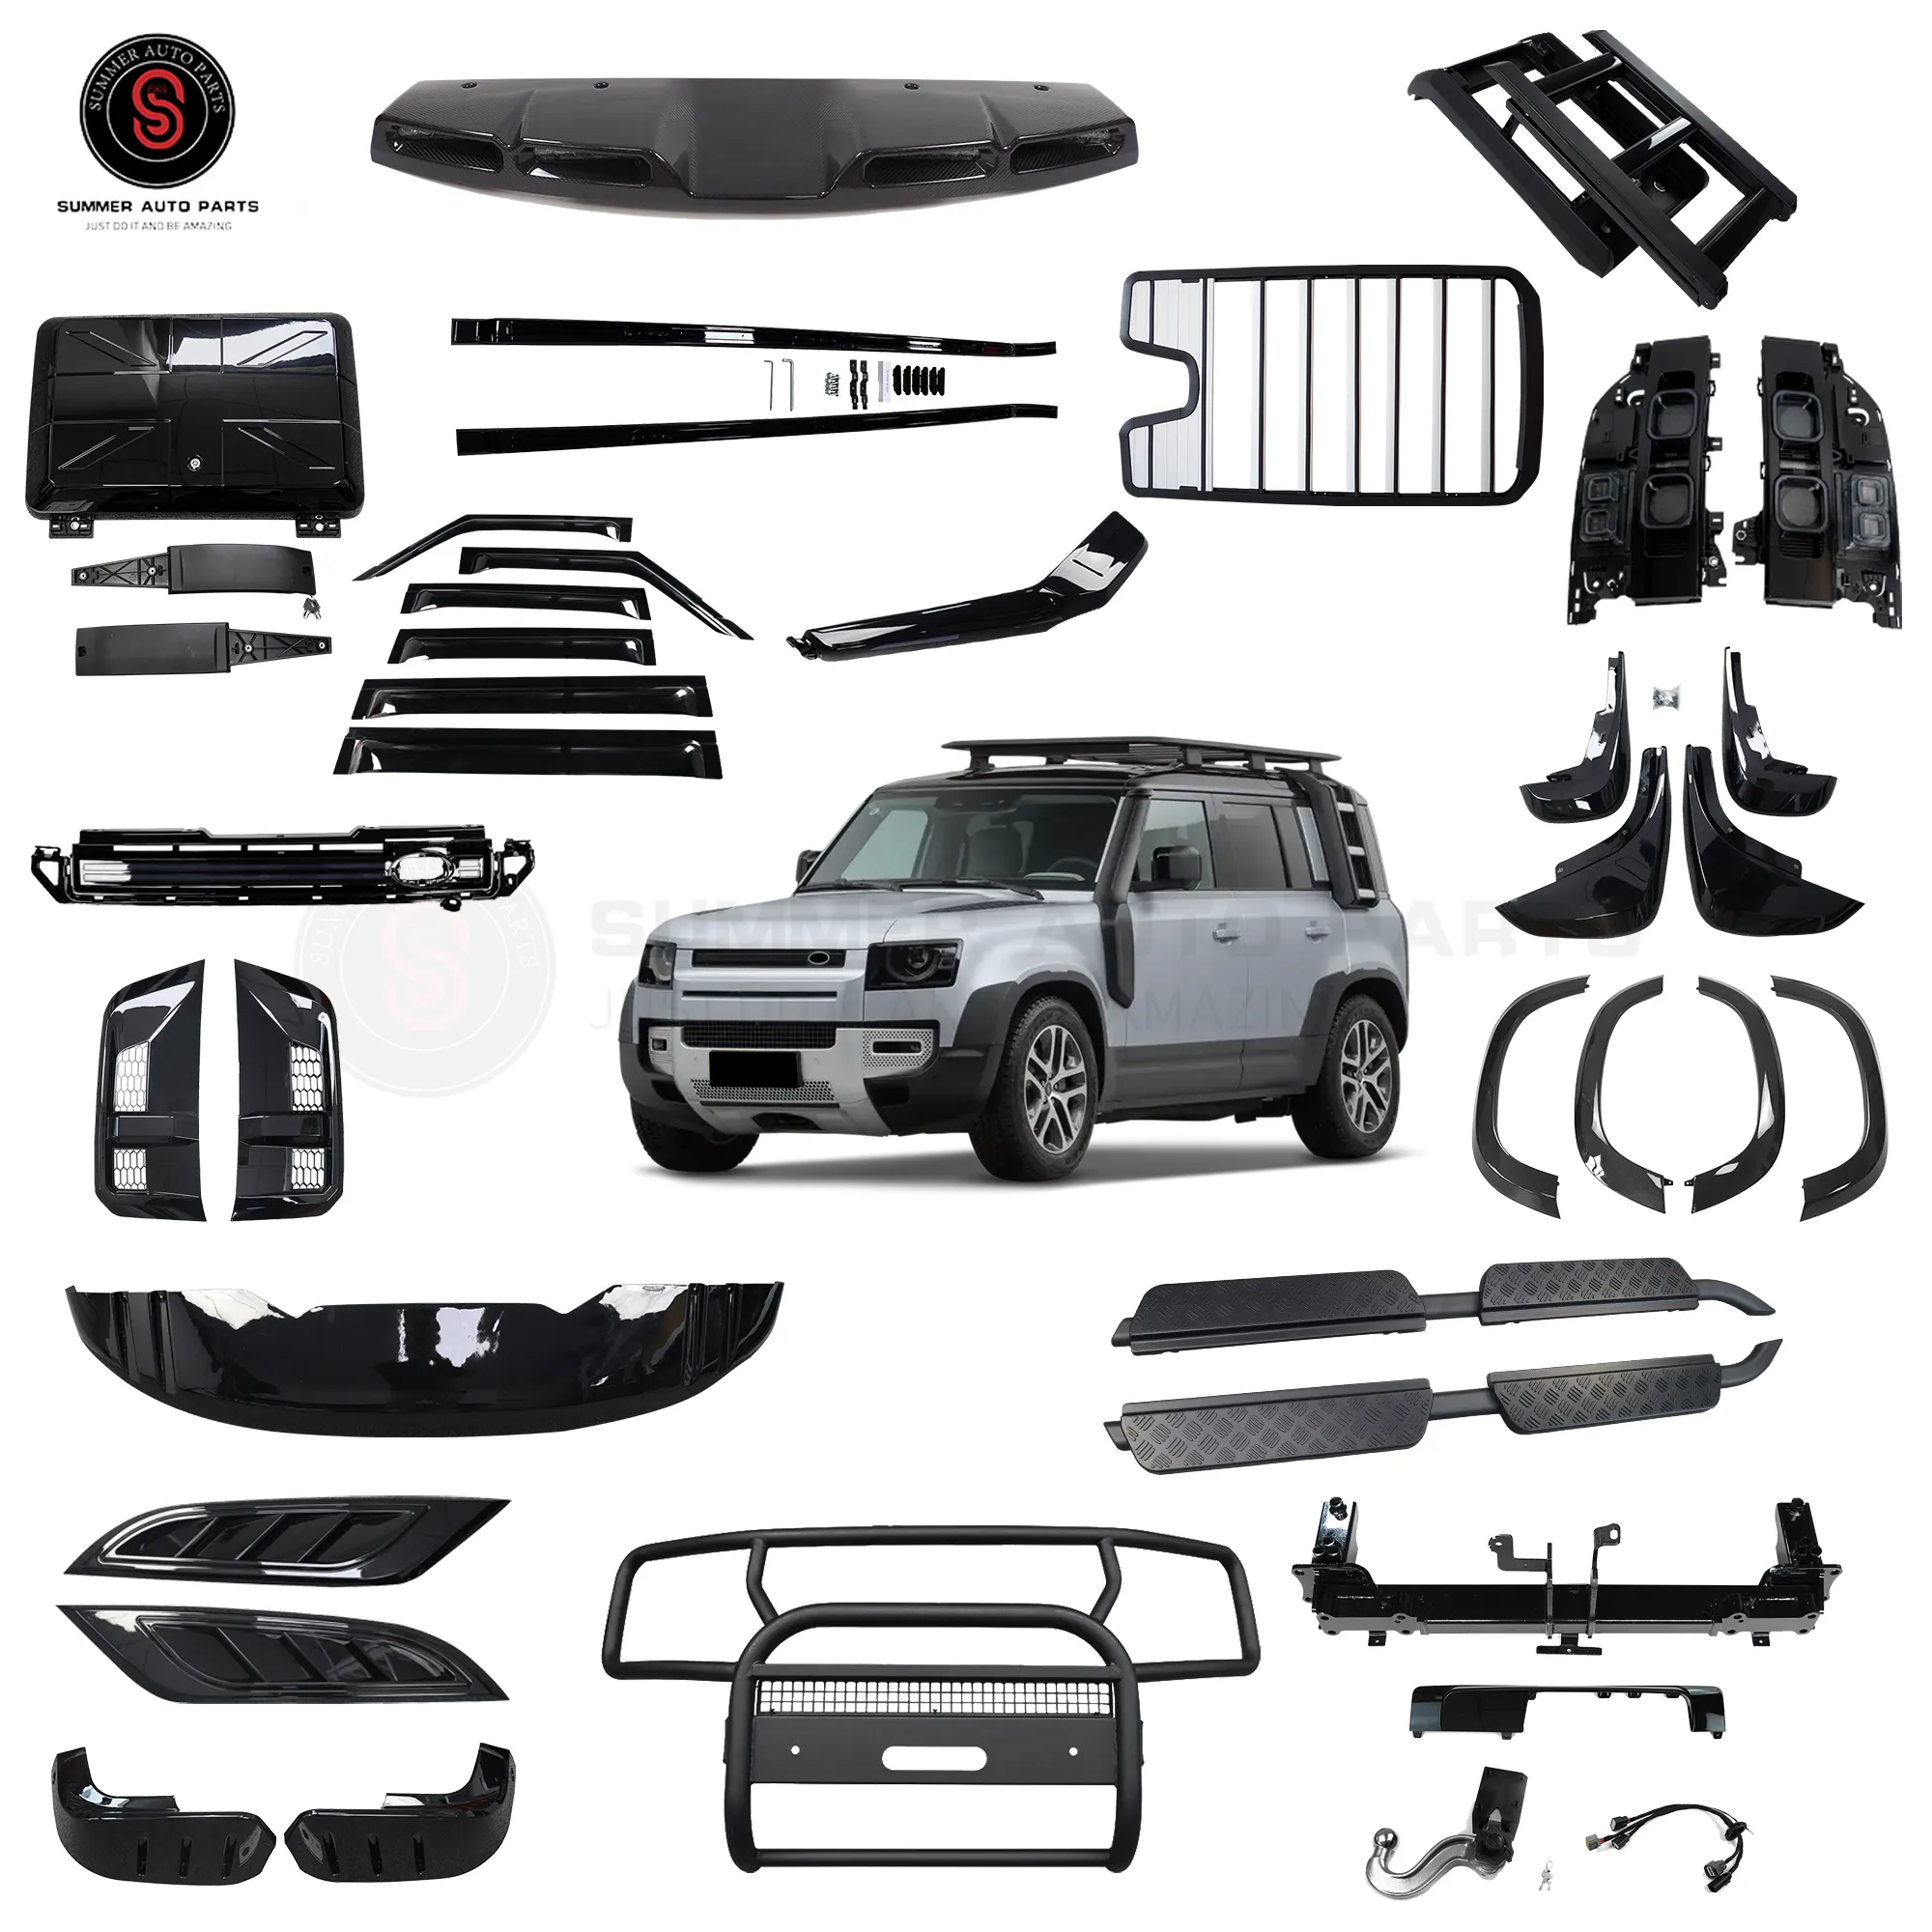 Accessori esterni Auto parafanghi parafanghi Spoiler posteriore protezione paraurti Auto ricambi Auto per Land Rover Defender accessori